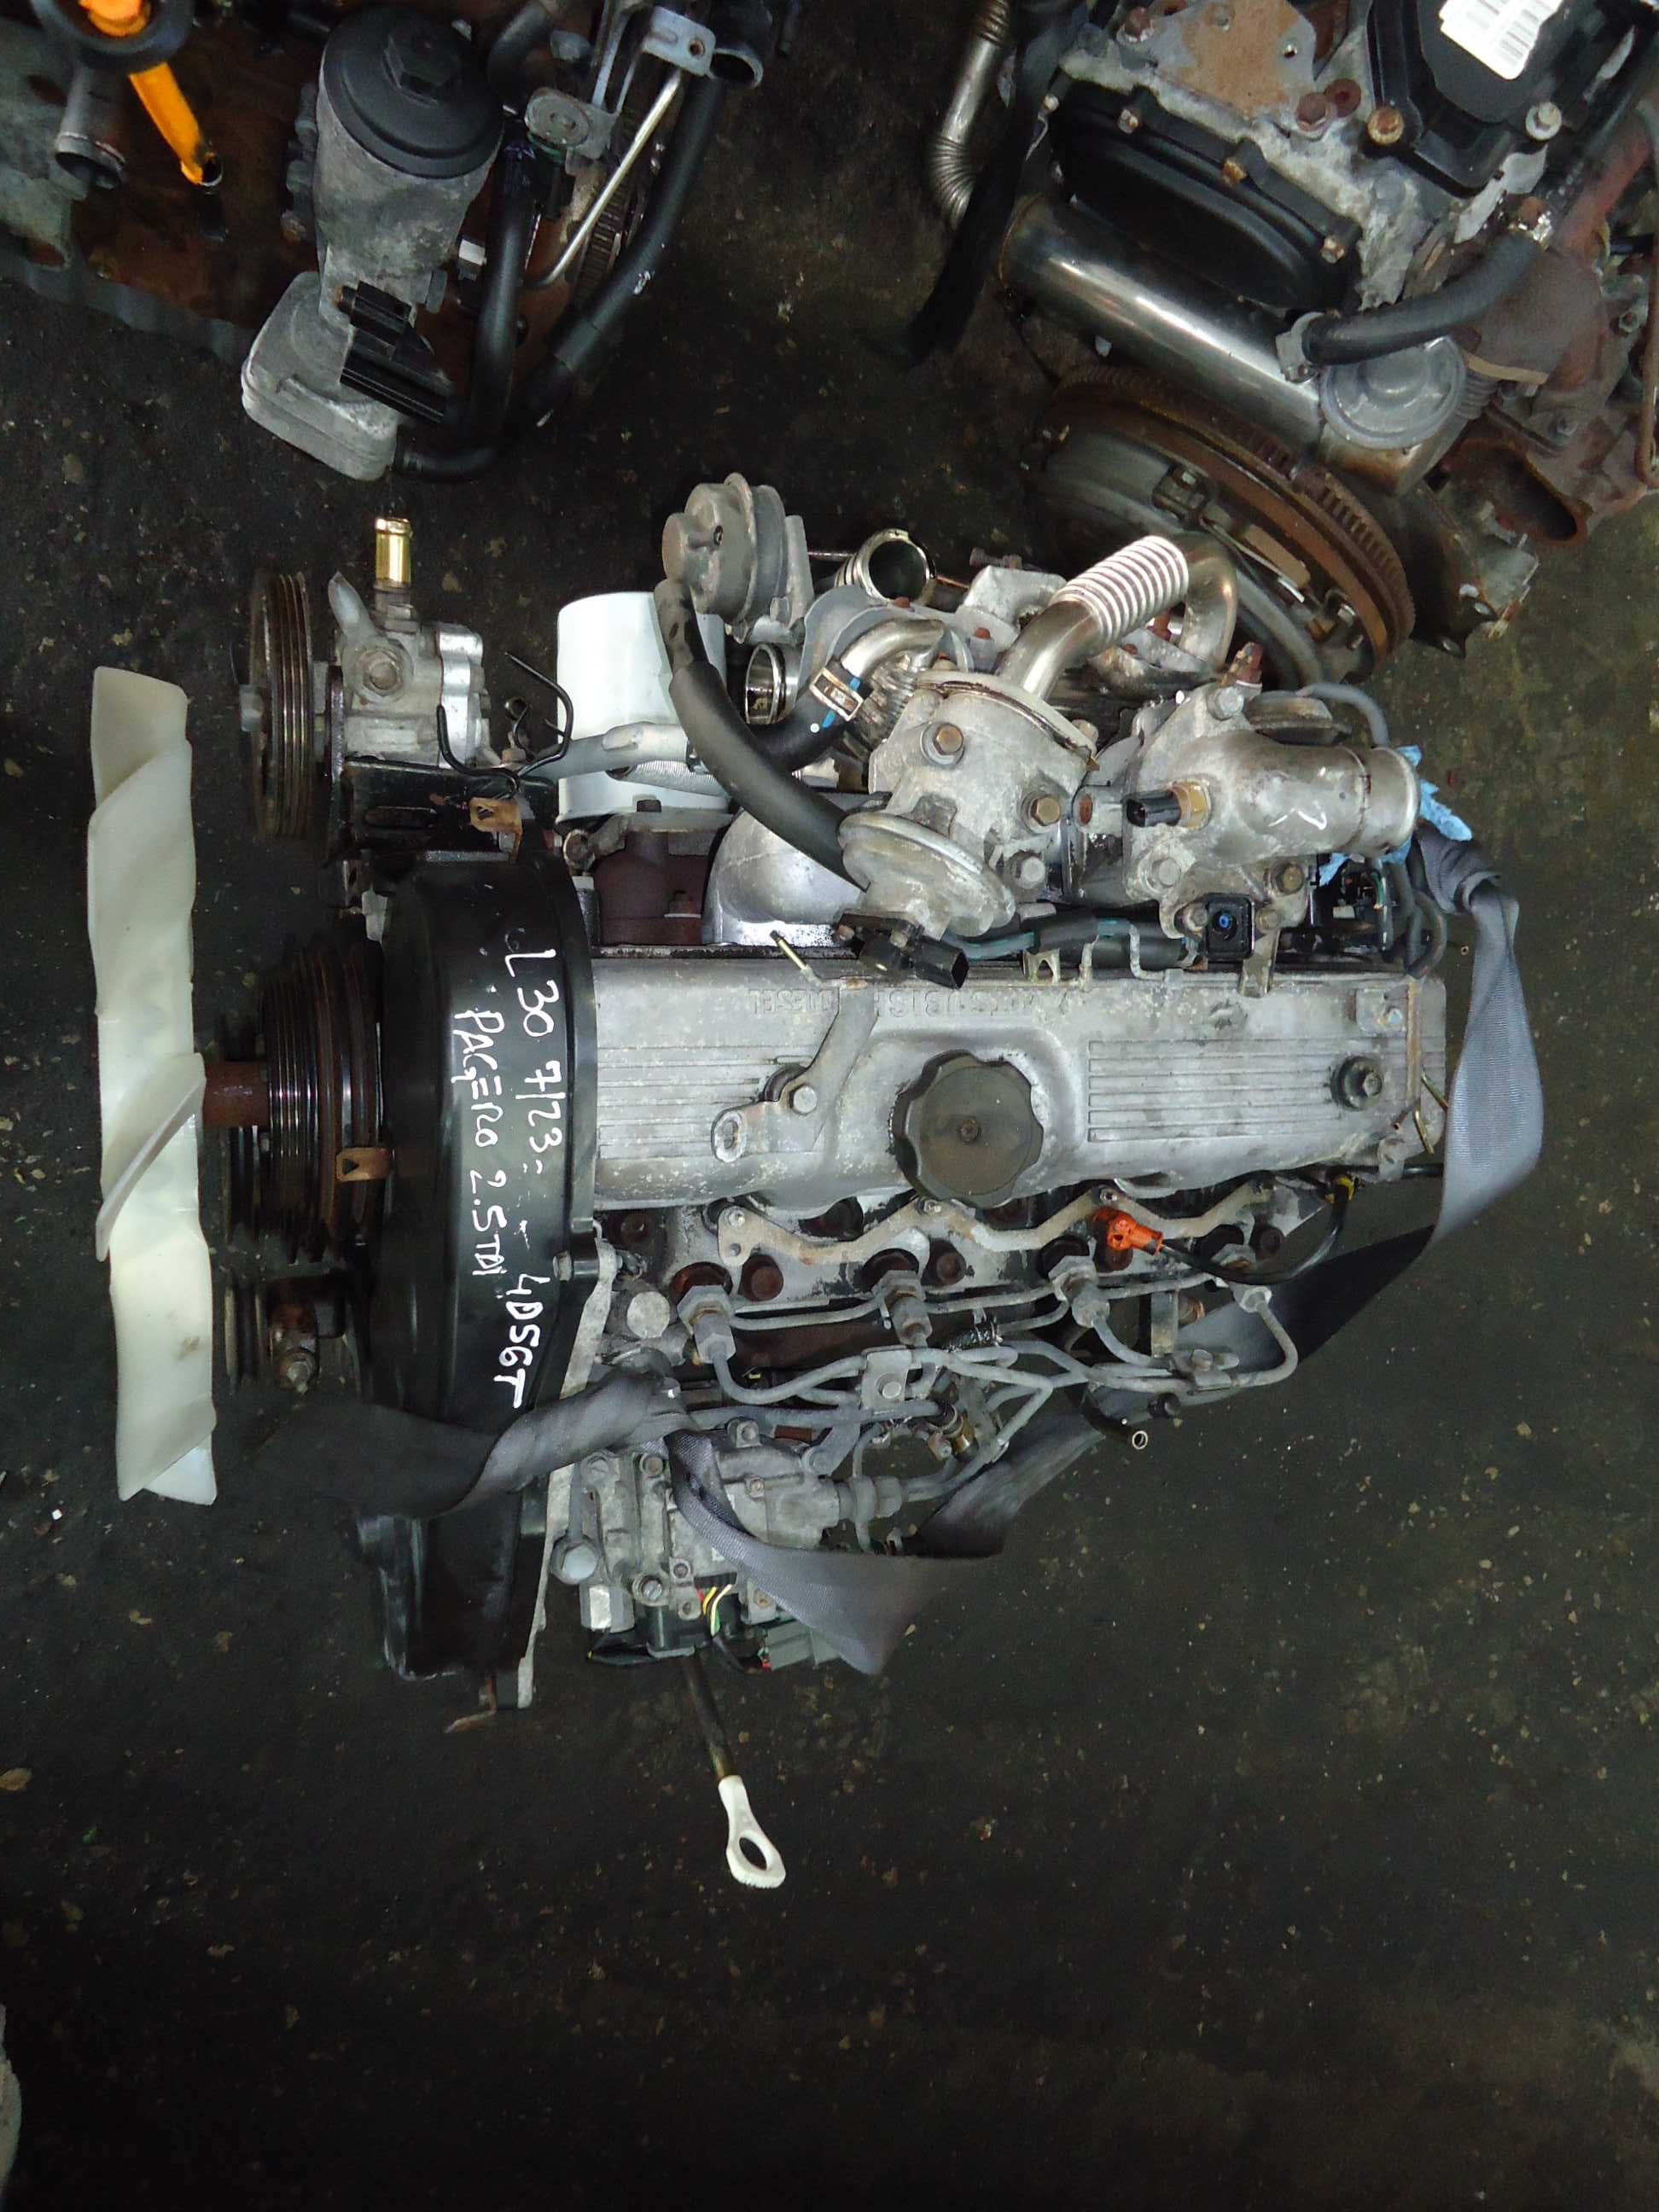 Motor Mitsubishi 2.5 Tdi (4D56T) bomba eléctrica de 2004